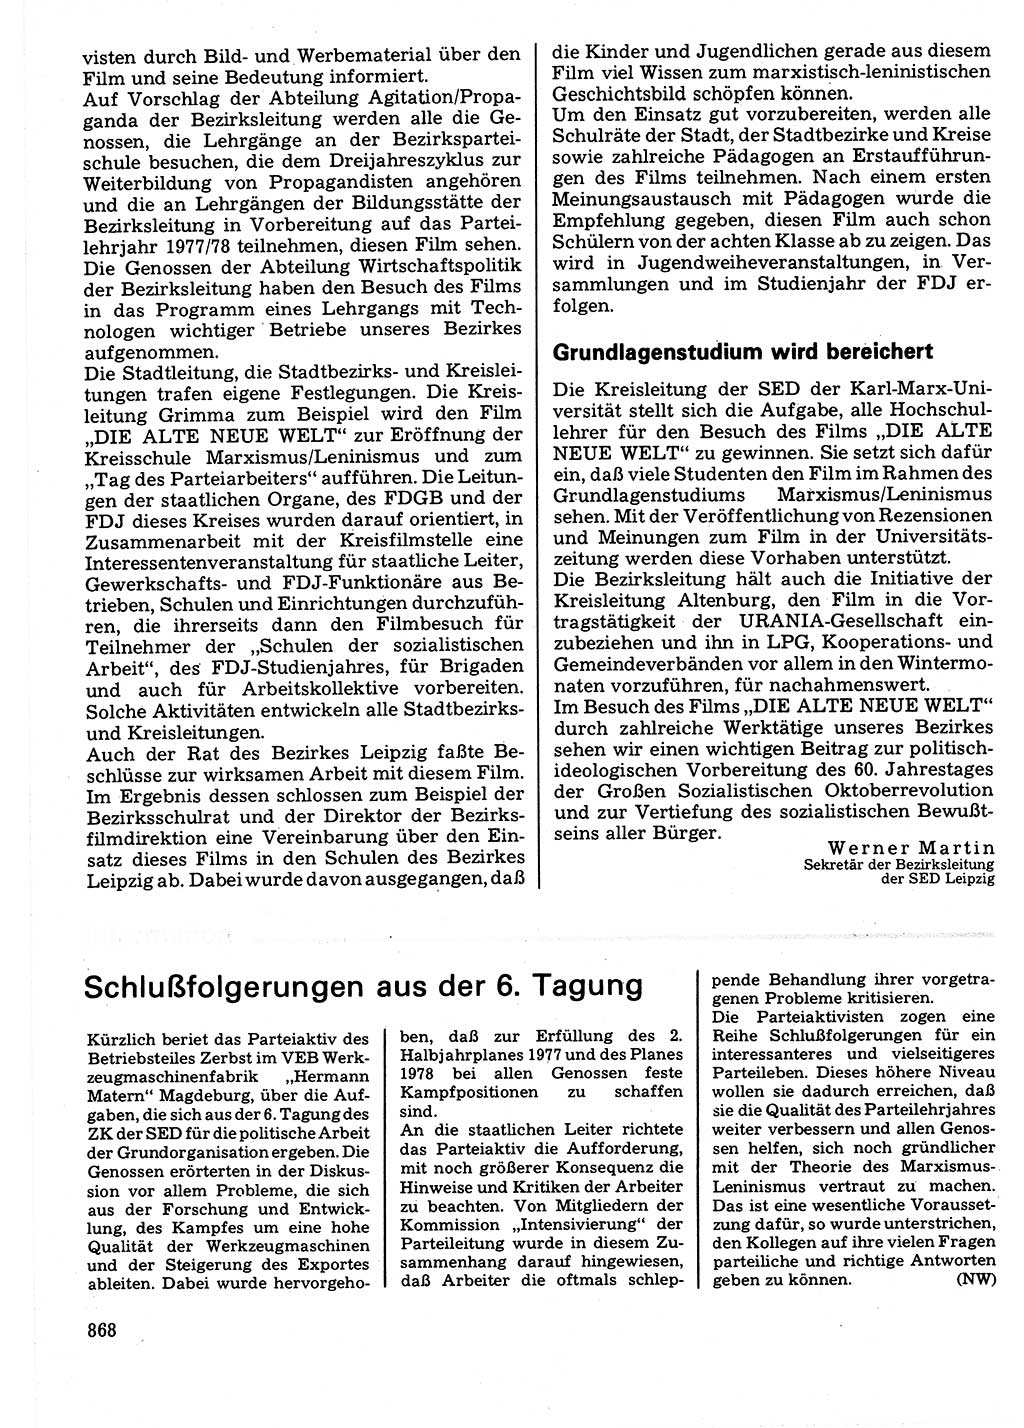 Neuer Weg (NW), Organ des Zentralkomitees (ZK) der SED (Sozialistische Einheitspartei Deutschlands) für Fragen des Parteilebens, 32. Jahrgang [Deutsche Demokratische Republik (DDR)] 1977, Seite 868 (NW ZK SED DDR 1977, S. 868)